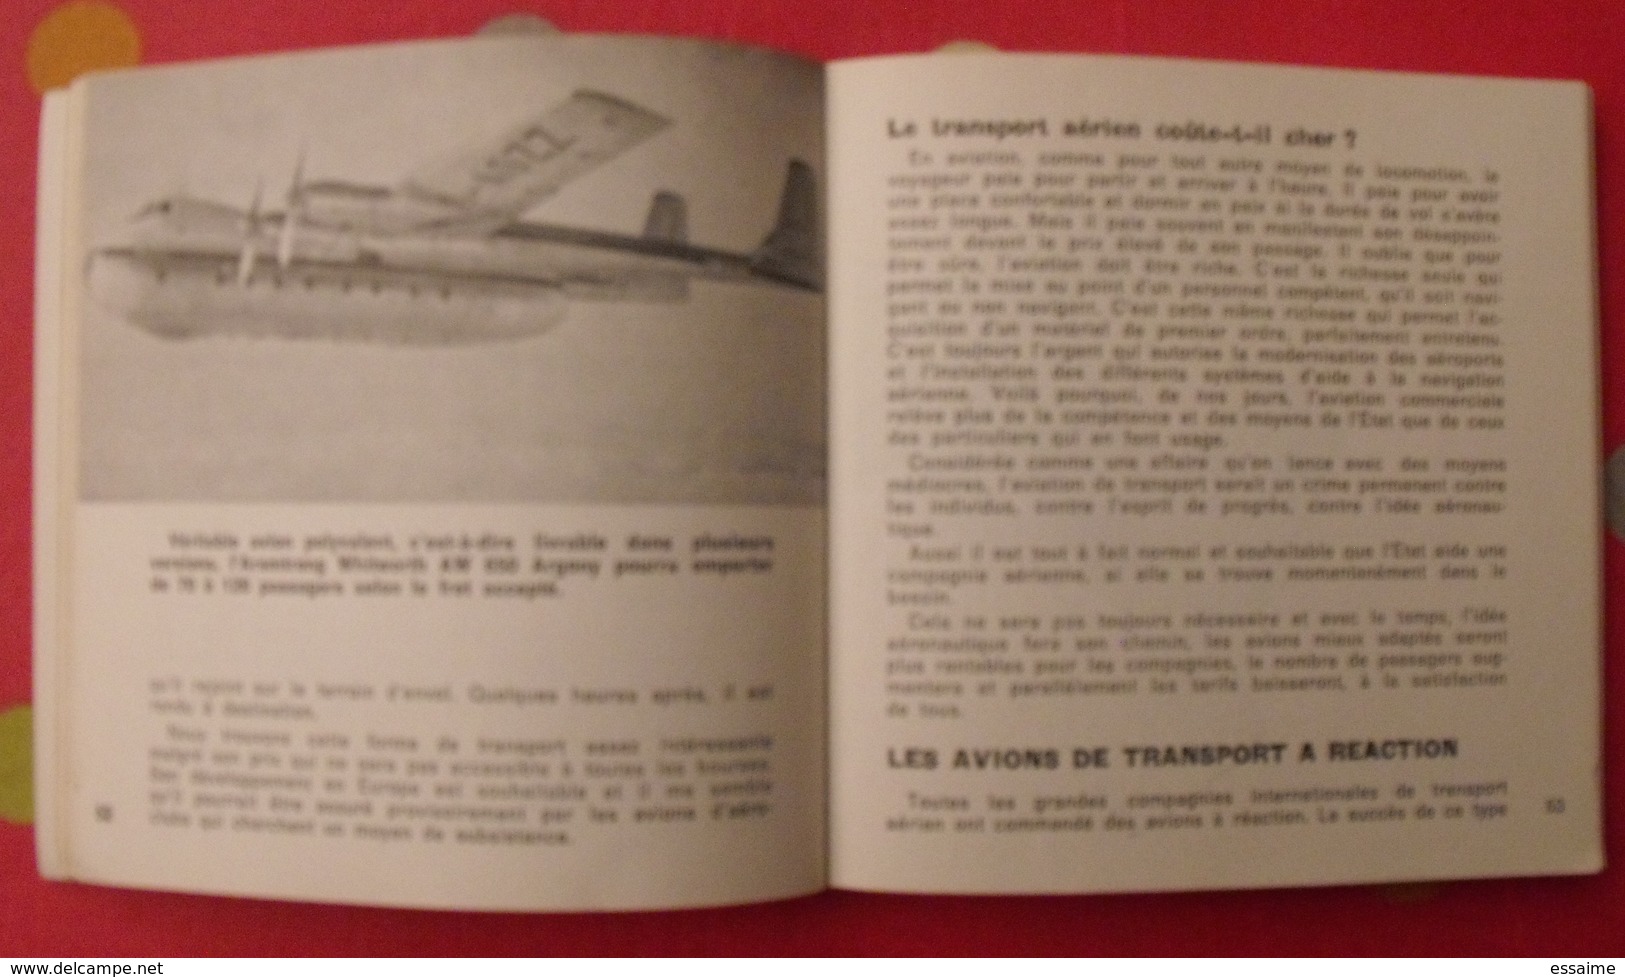 Marabout Flash Aviation N° 54. L'aviation Moderne. Freddy Capron. 1960 - Avión